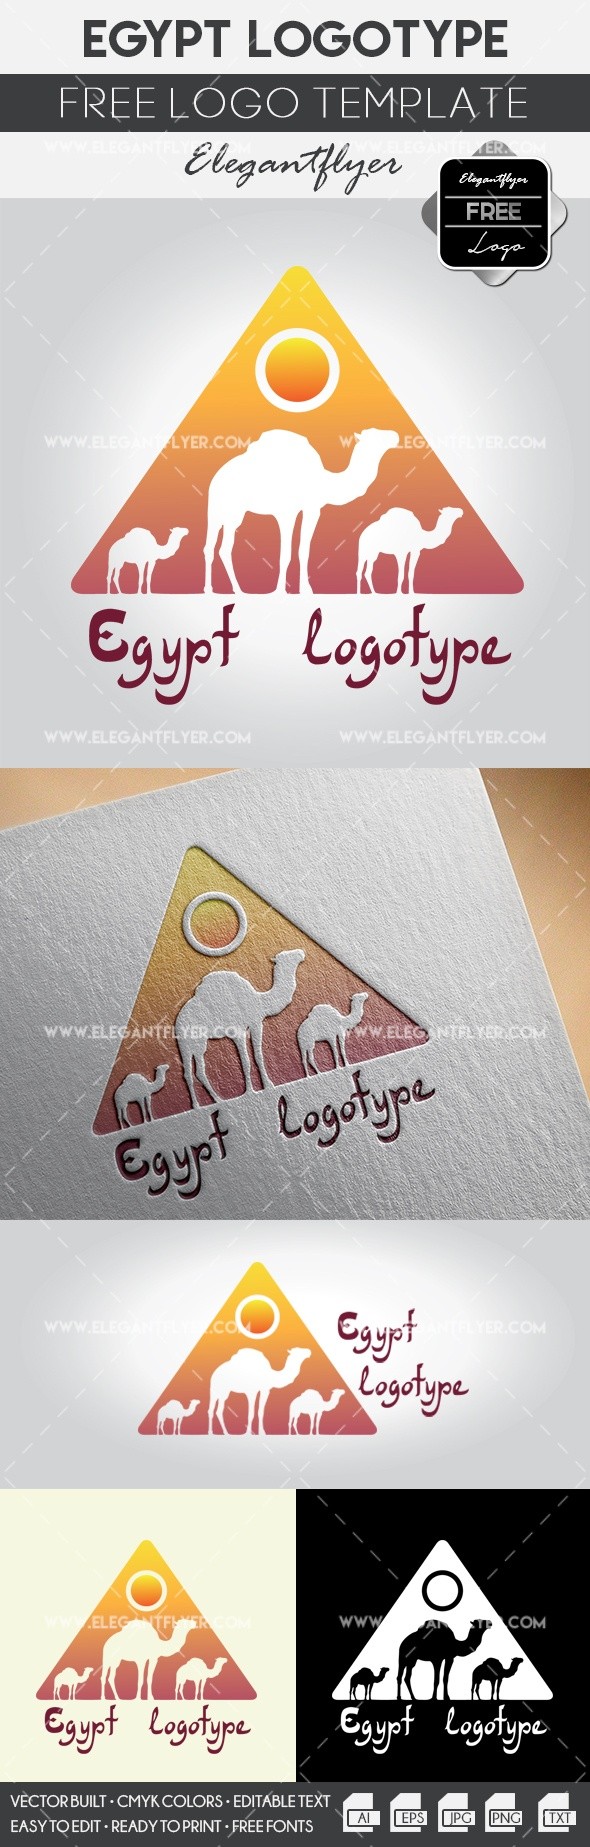 Egipto by ElegantFlyer